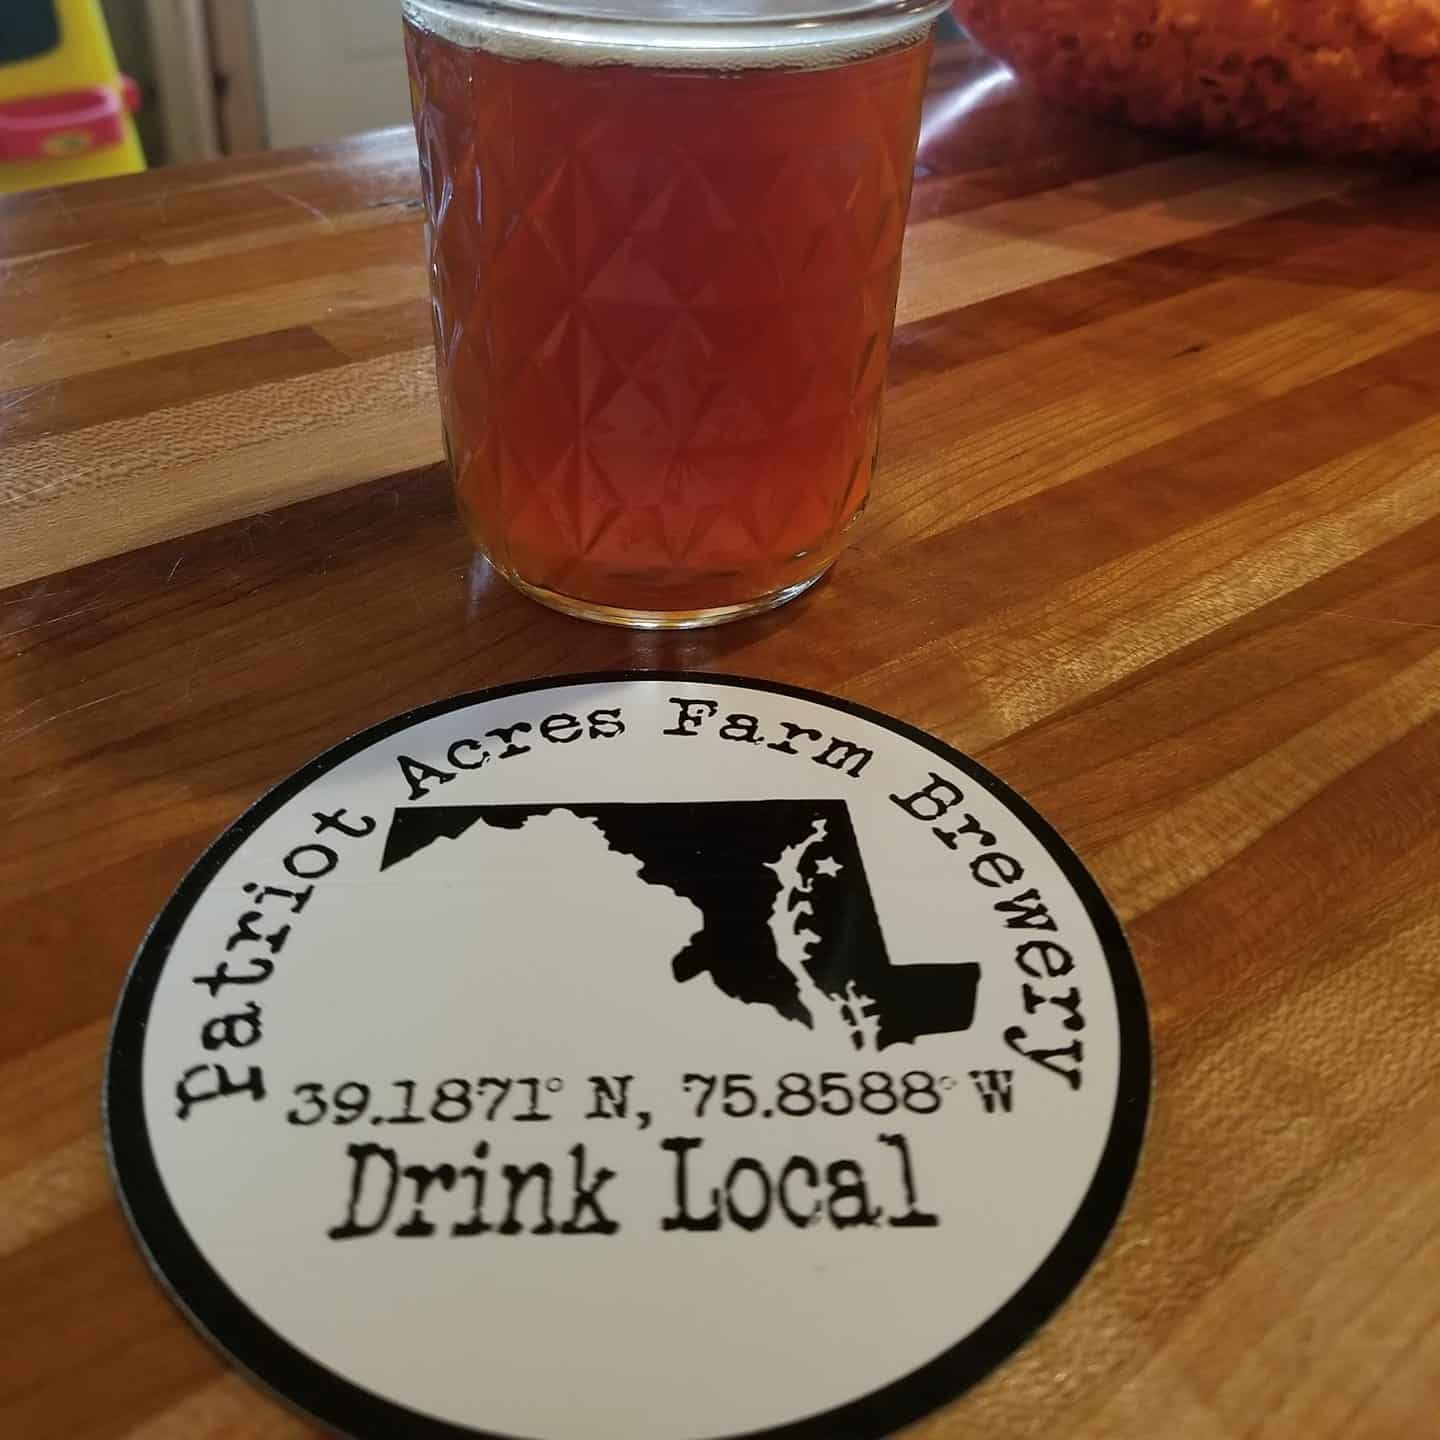 Patriot Acres Farm Brewery